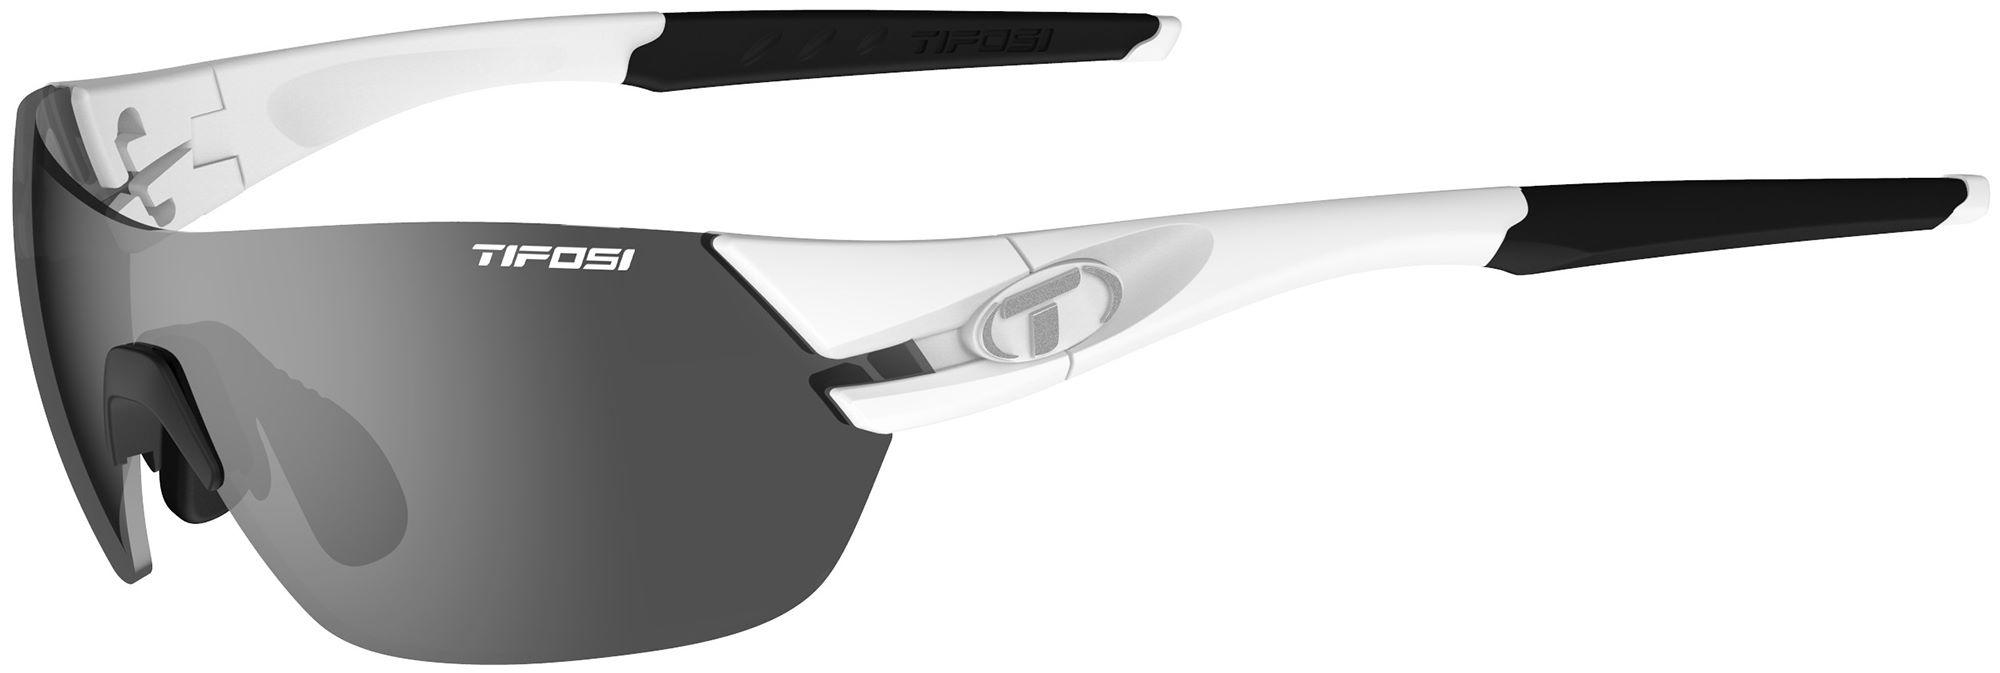 Image of Tifosi Eyewear Slice Sunglasses (3 Lens) - Matte/White